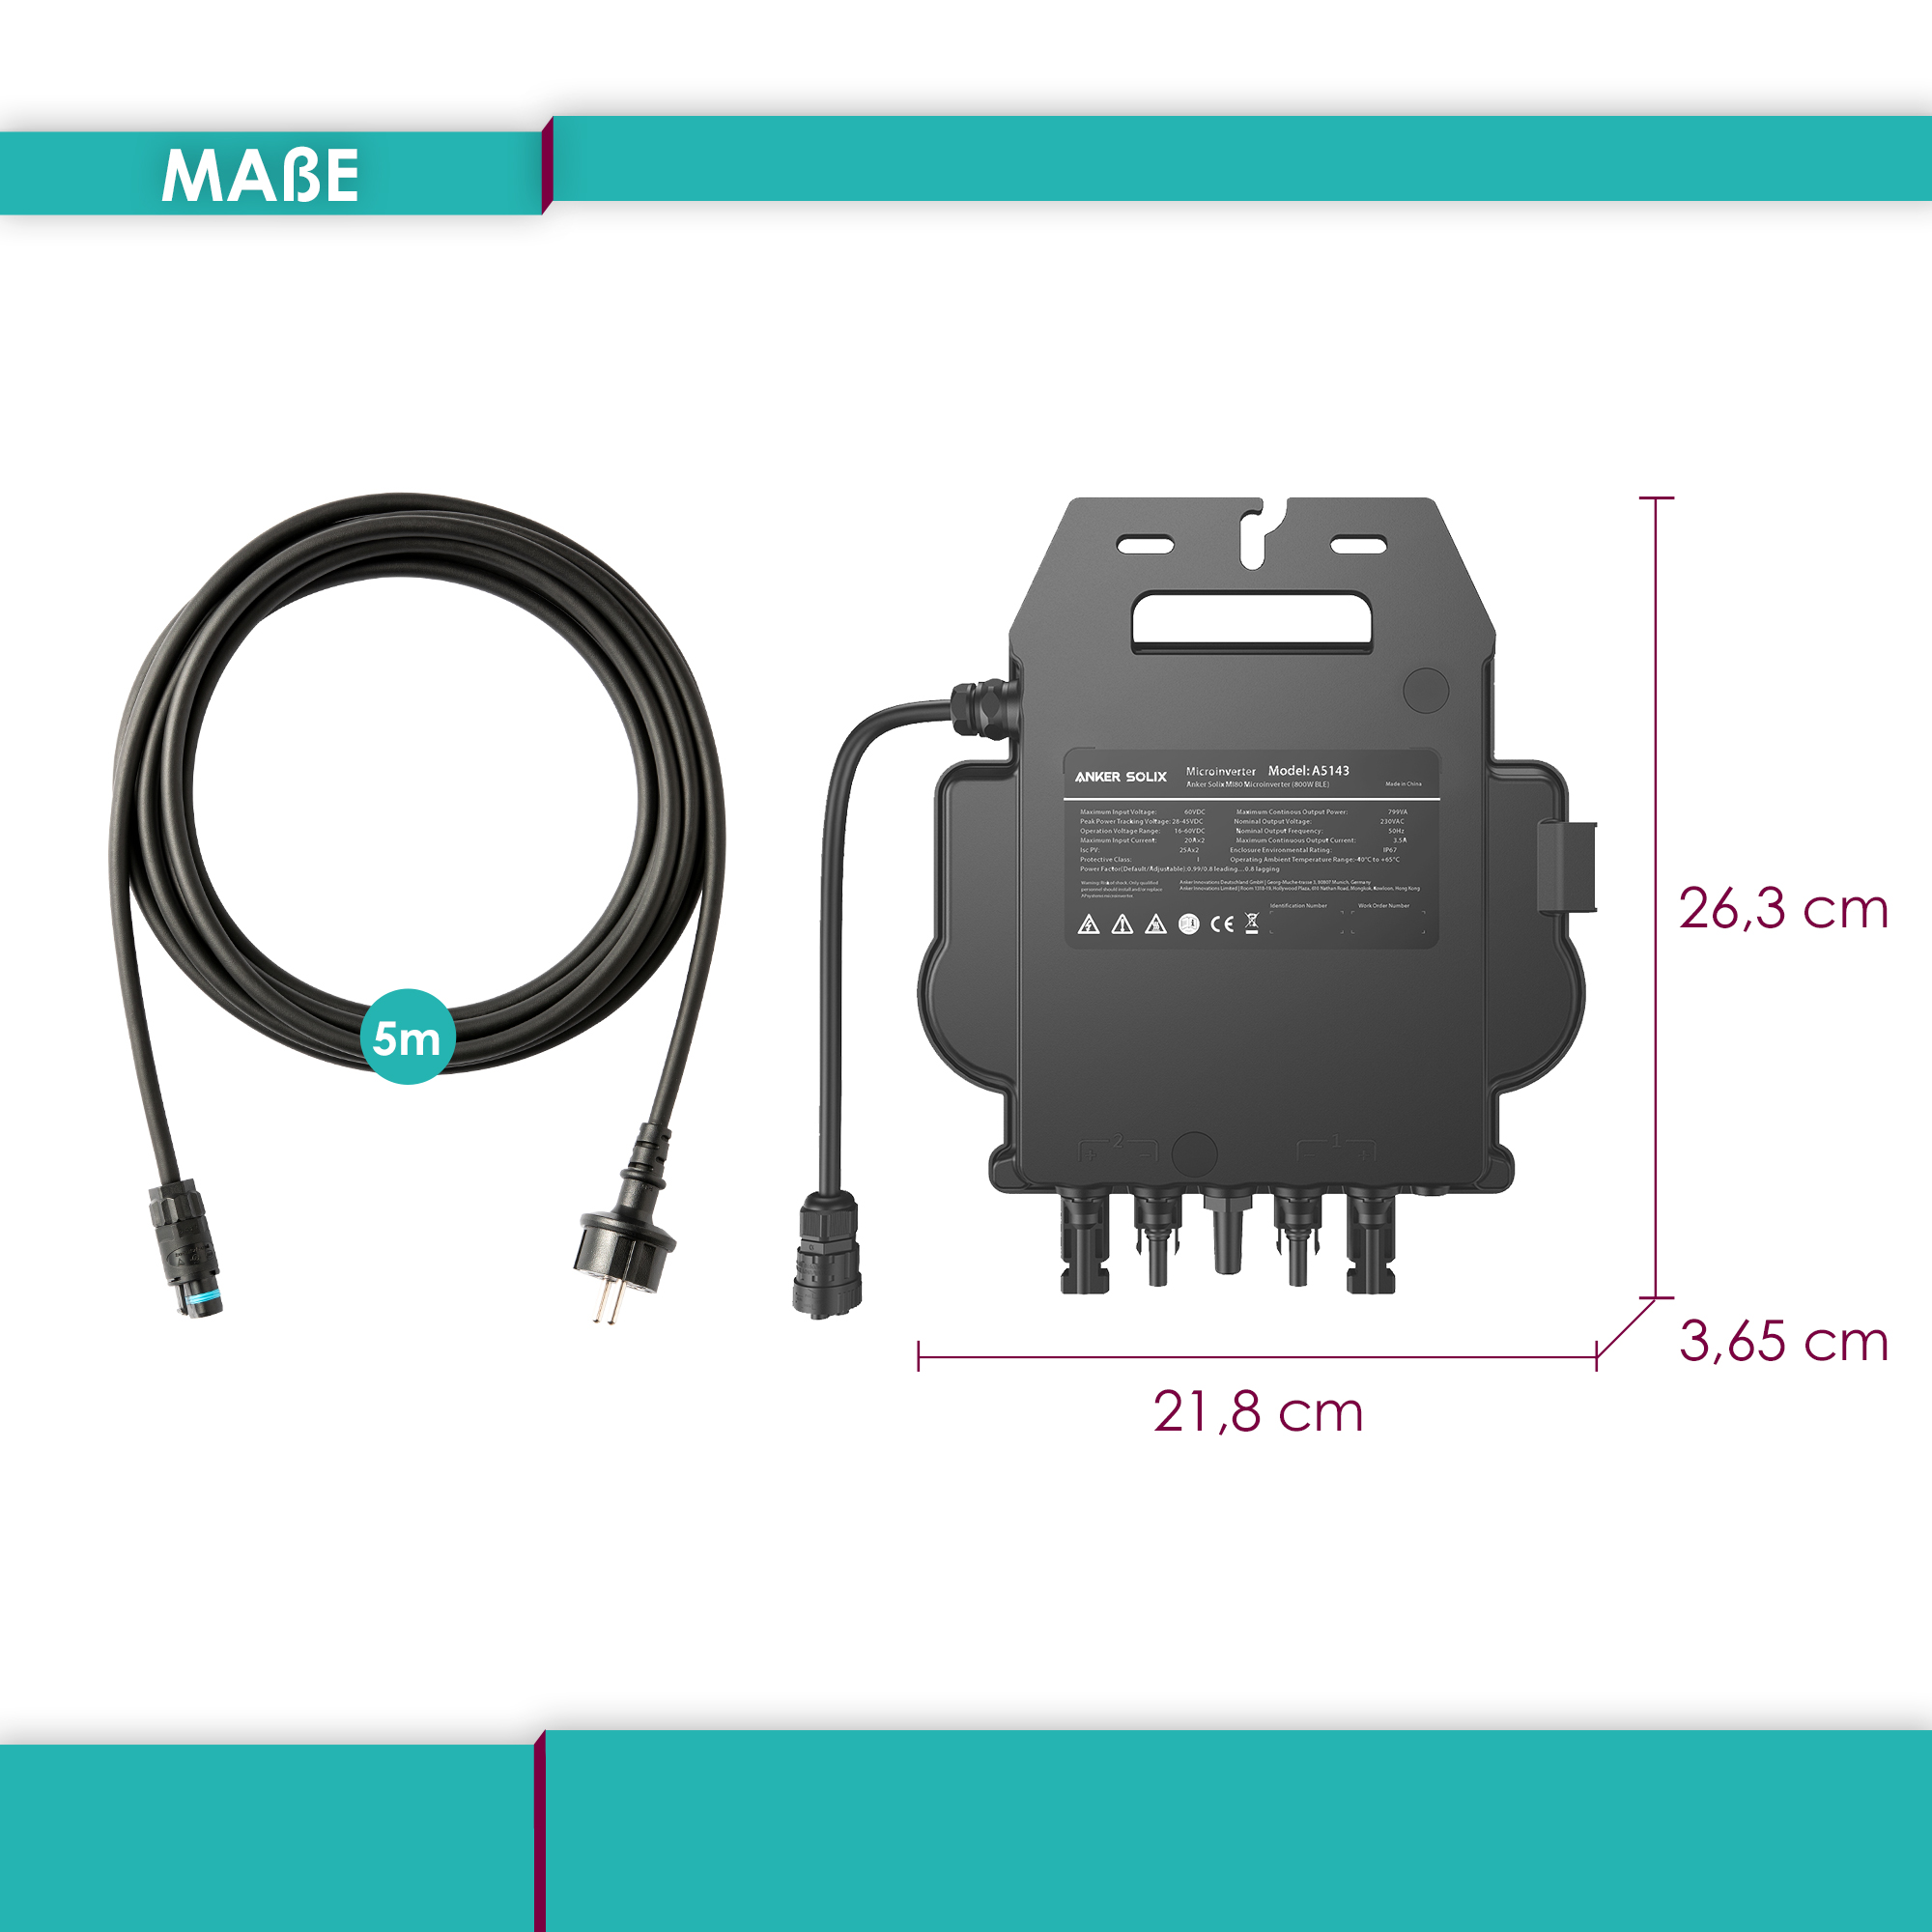 SOLIX Mikro-Wechselrichter Set Mikro-Wechselrichter ANKER Schuko-Kabel MI80 +